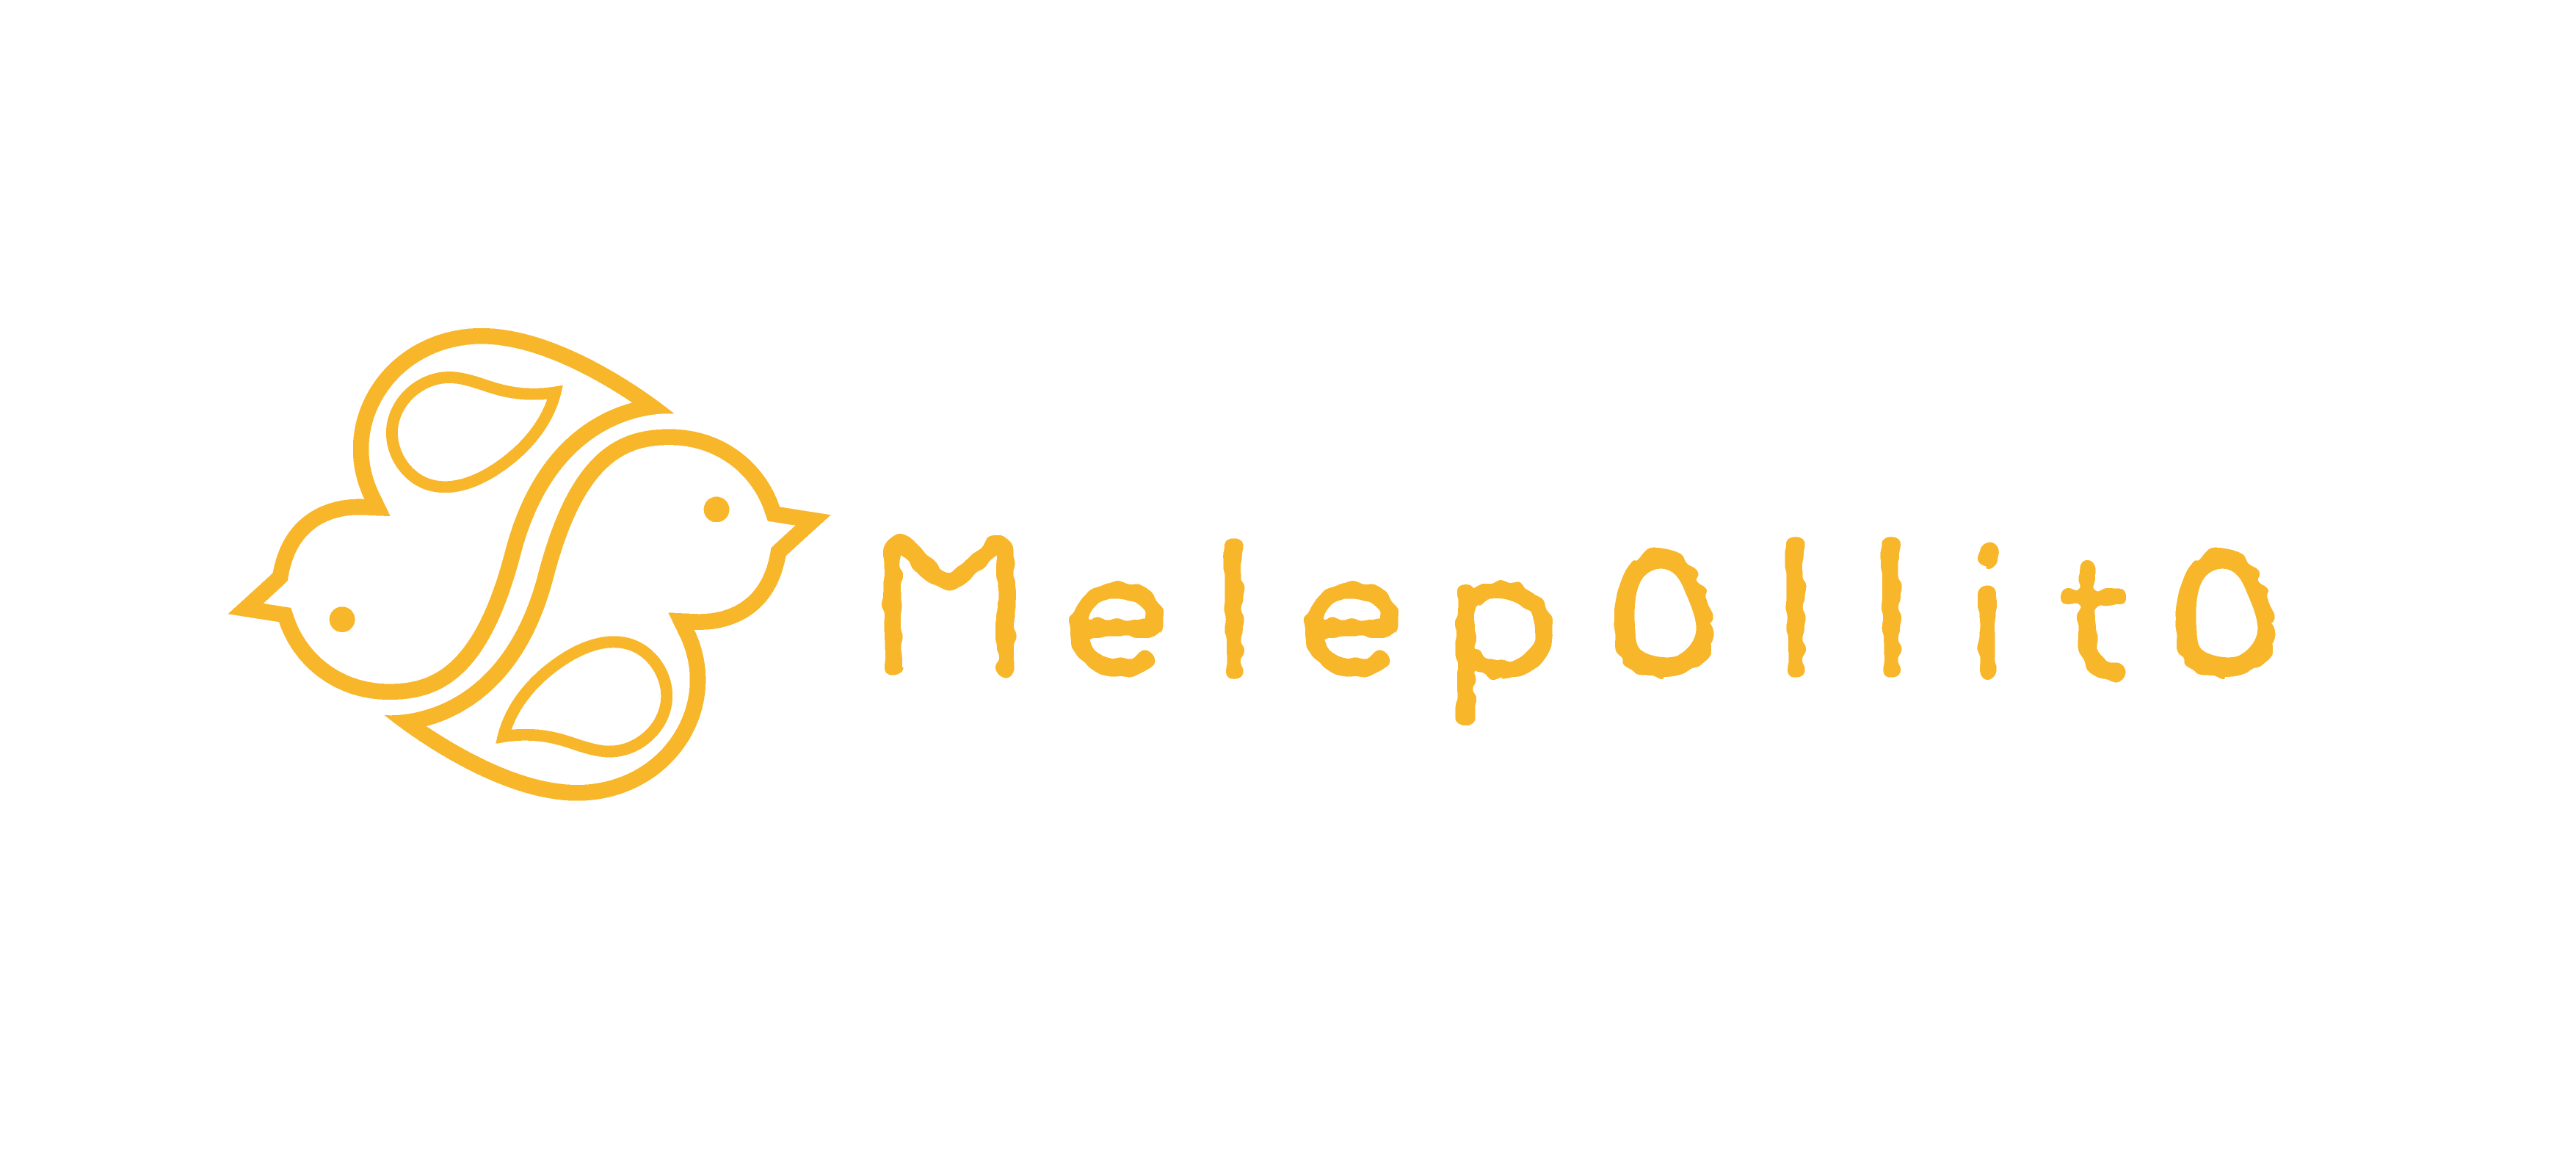 はじめまして。姉妹コーデをさせたいお店、Melepollitoです。